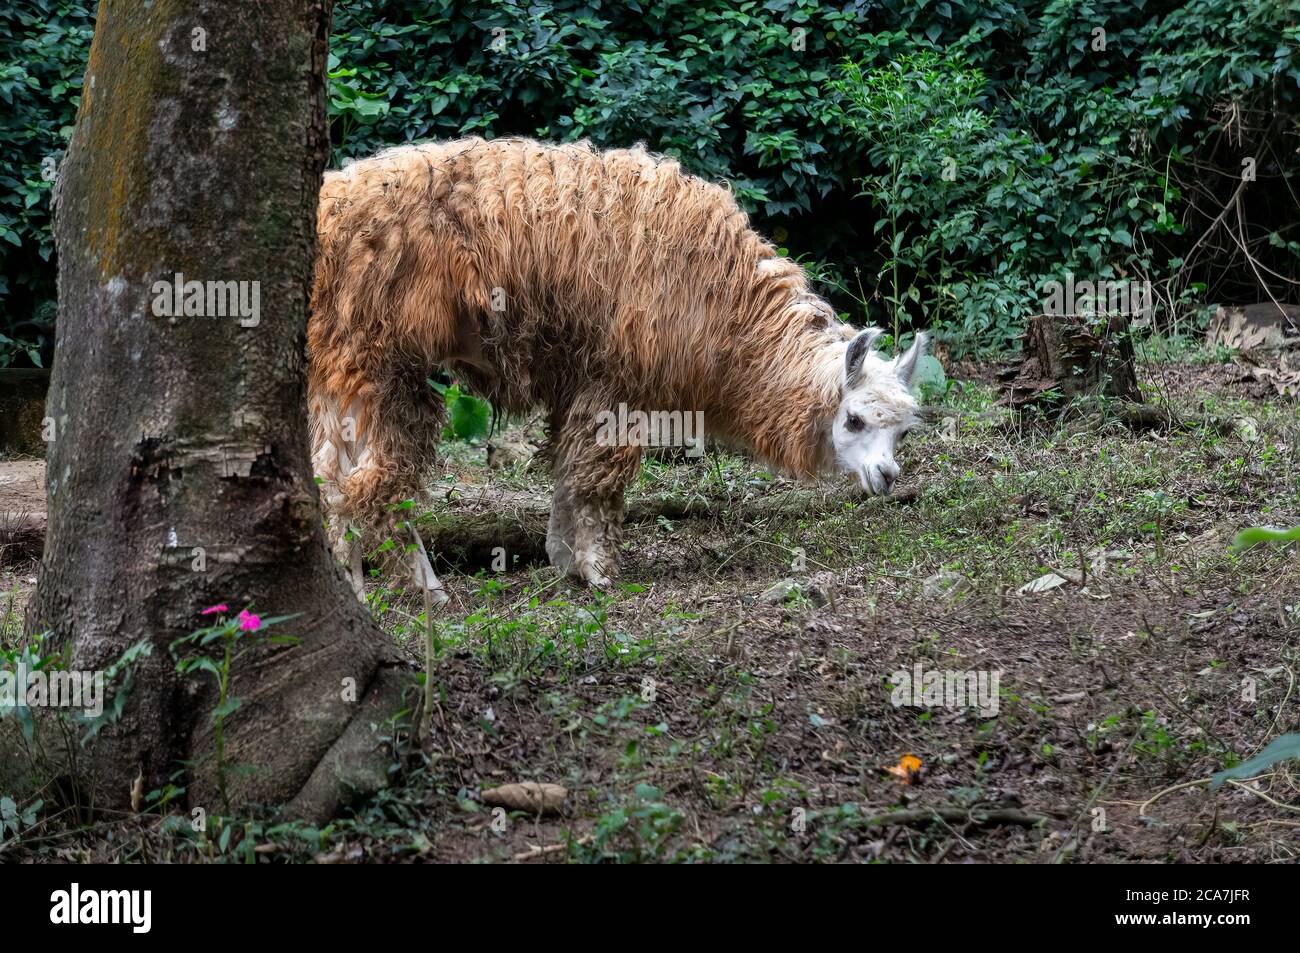 Un lama (AKA lama glama - un camelide sudamericano addomesticato) che si alimenta all'interno del suo spazio nel parco zoologico Zoo Safari. Foto Stock